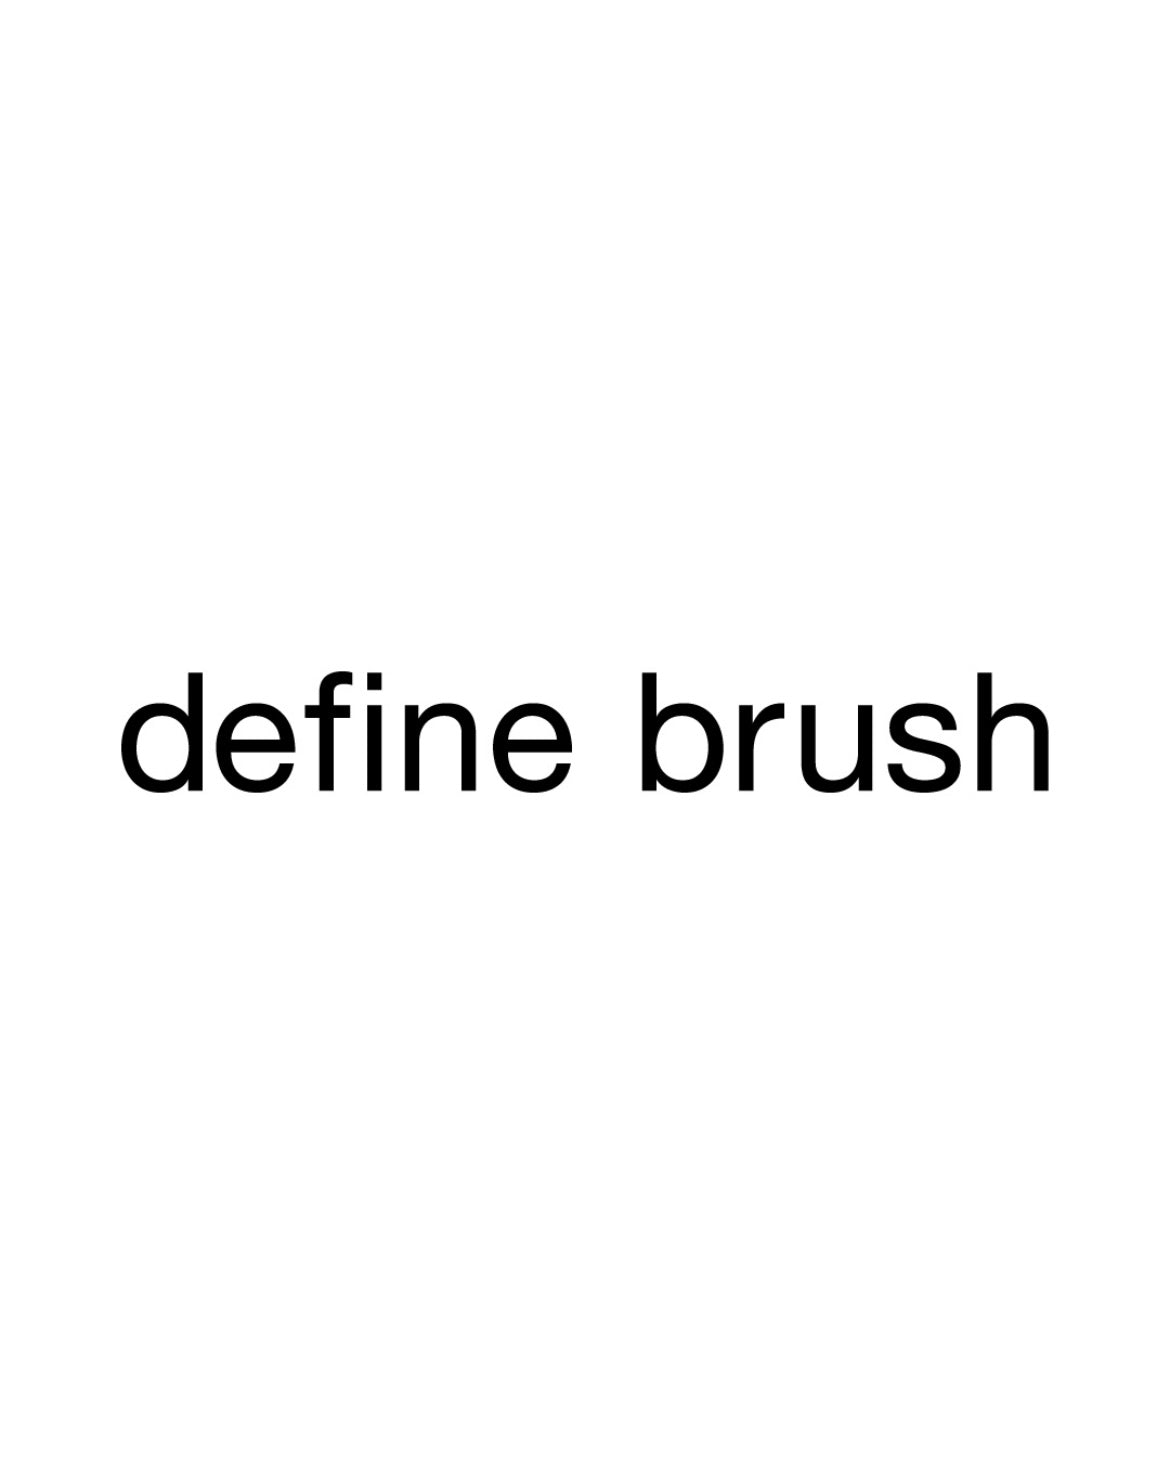 新ブランド「define brush」デビュー